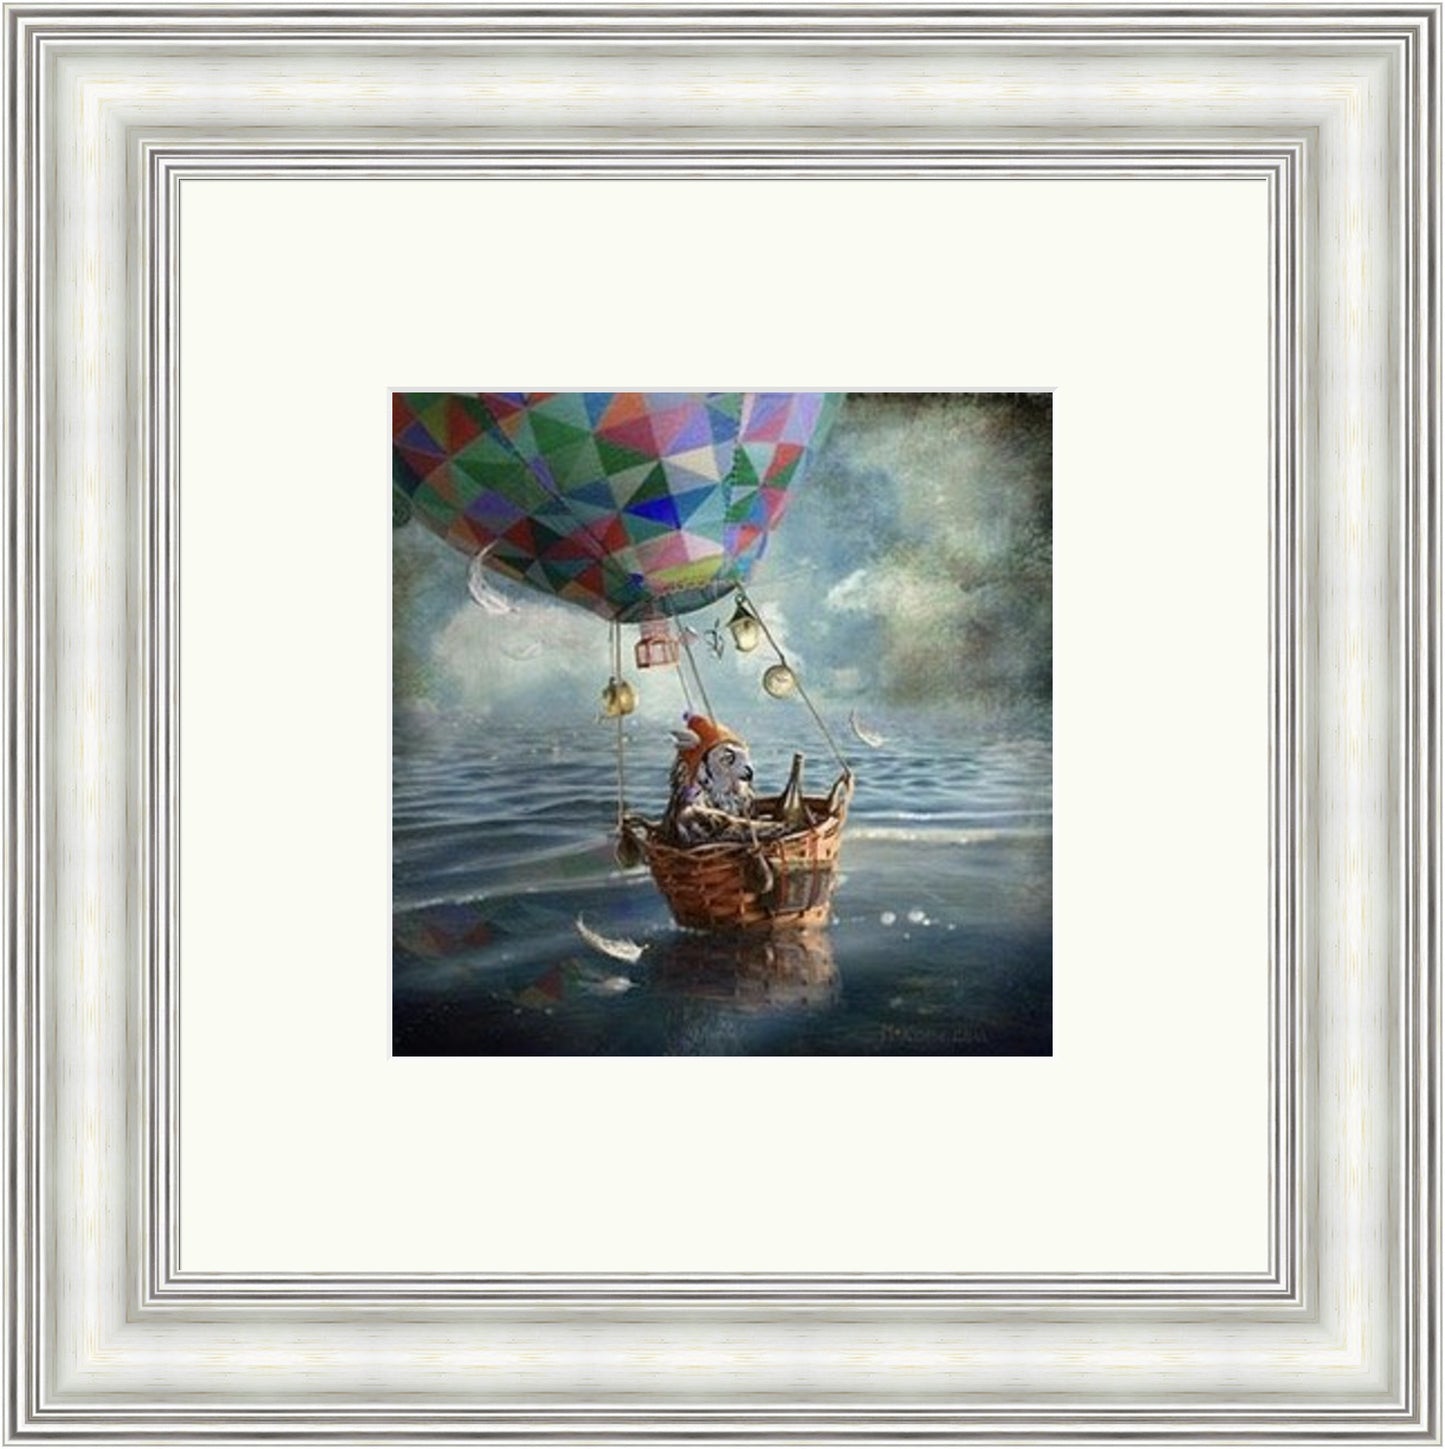 The Balloonist by Matylda Konecka